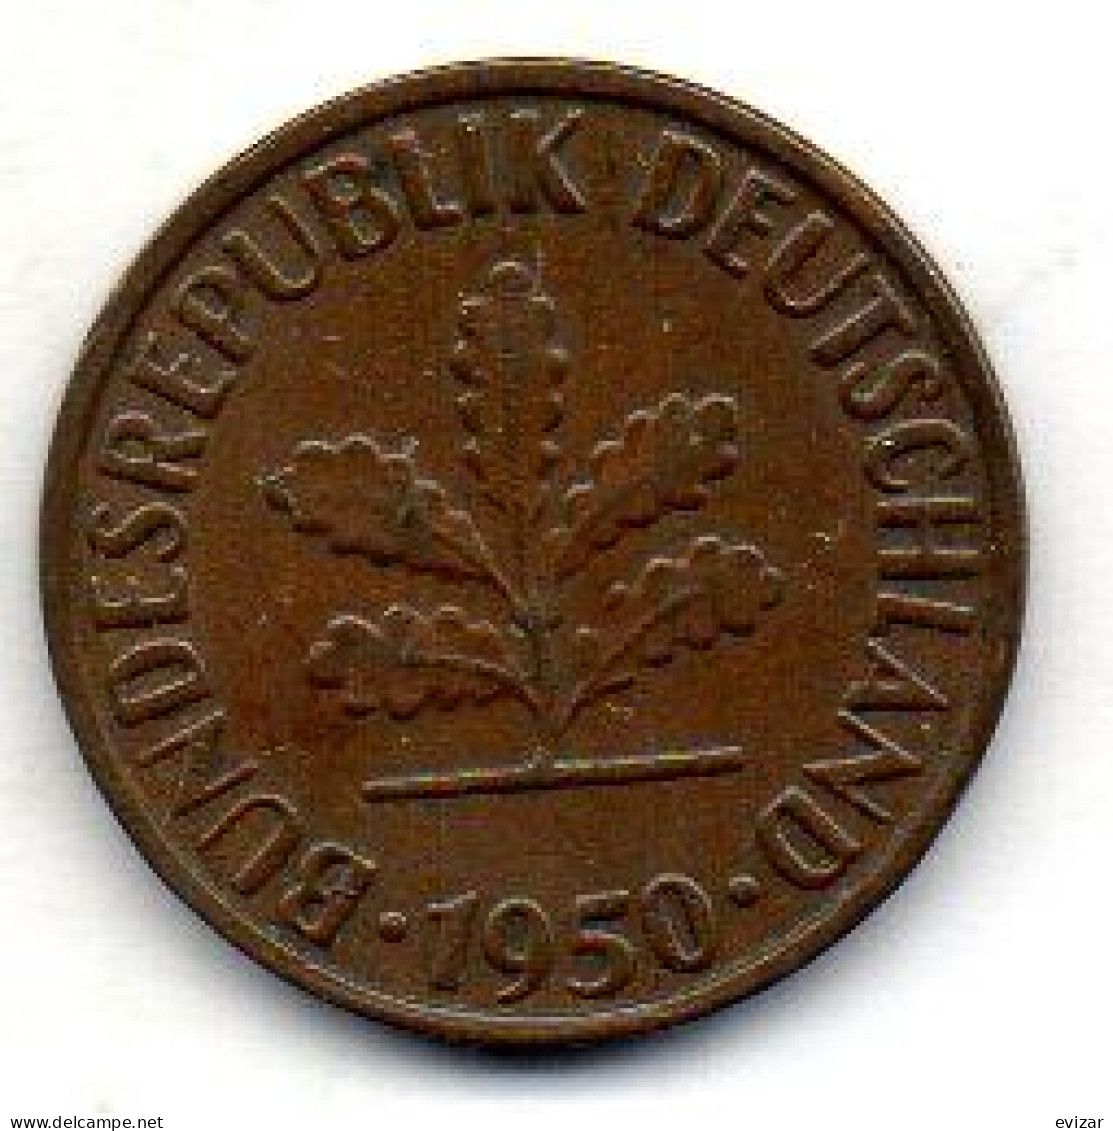 GERMANY - FEDERAL REPUBLIC, 2 Pfennig, Bronze, Year 1950-G, KM # 106 - 2 Pfennig